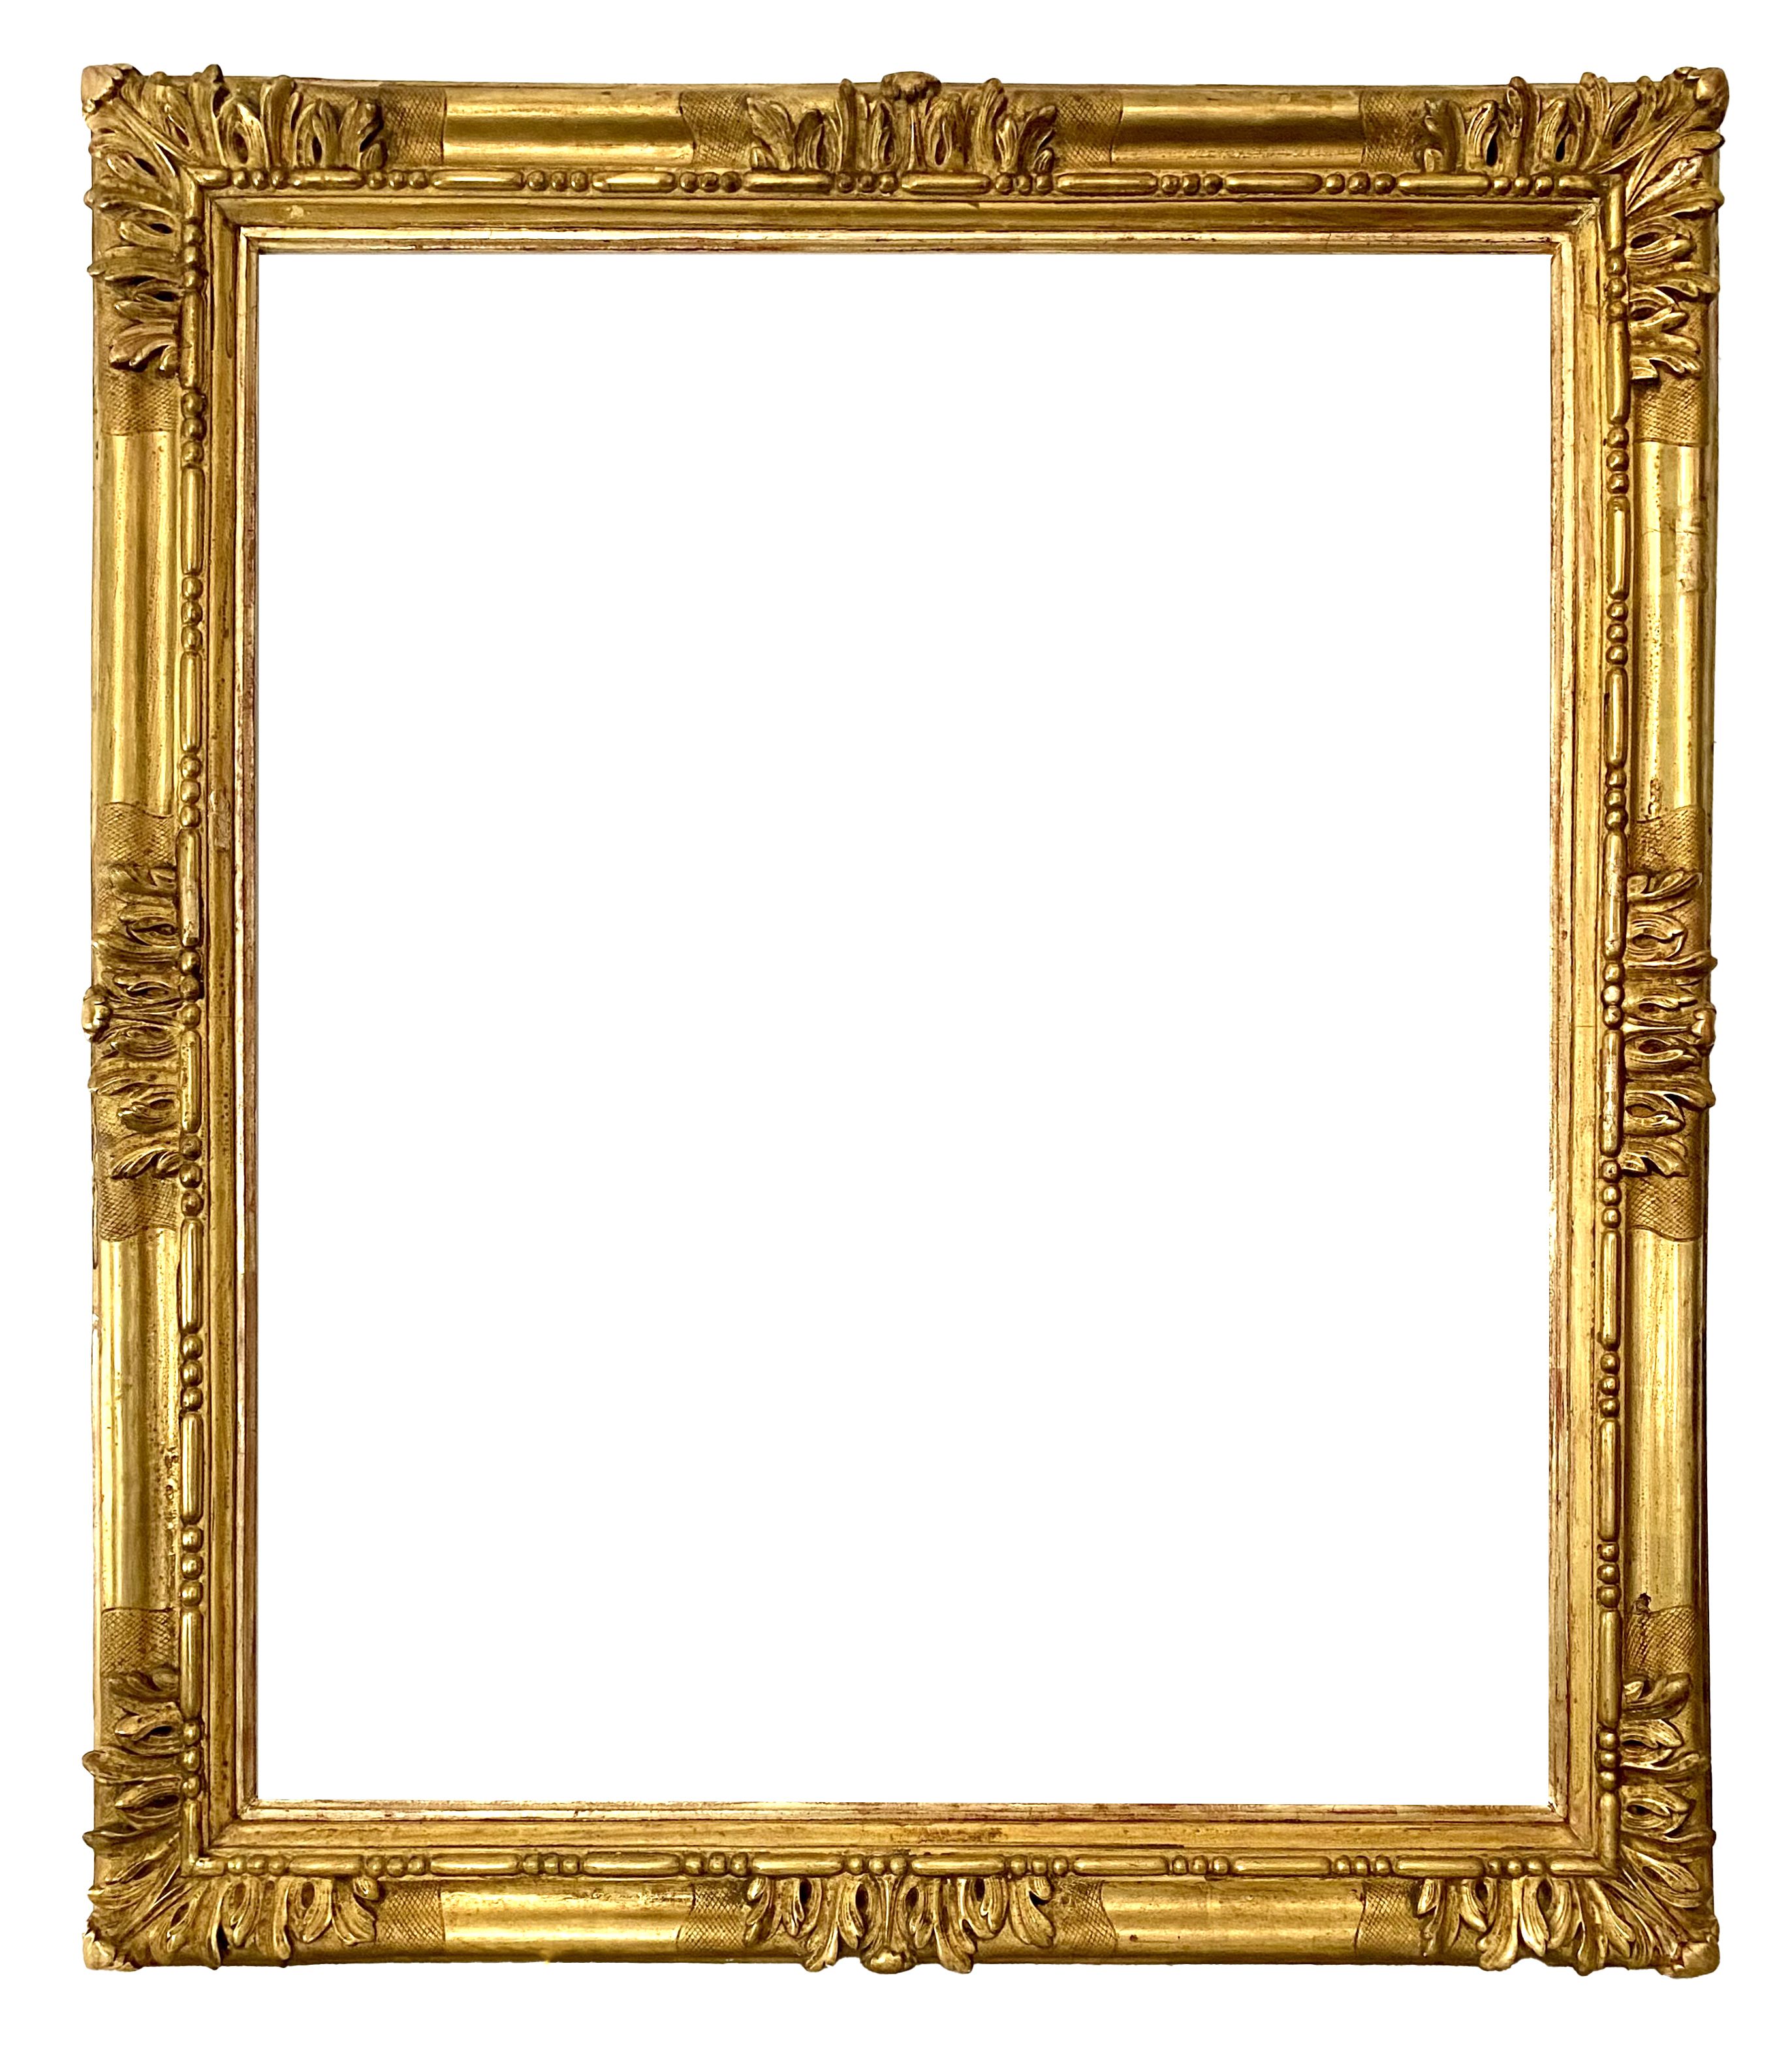 Louis XIV frame - 92,00 x 73,00 - REF - 1228